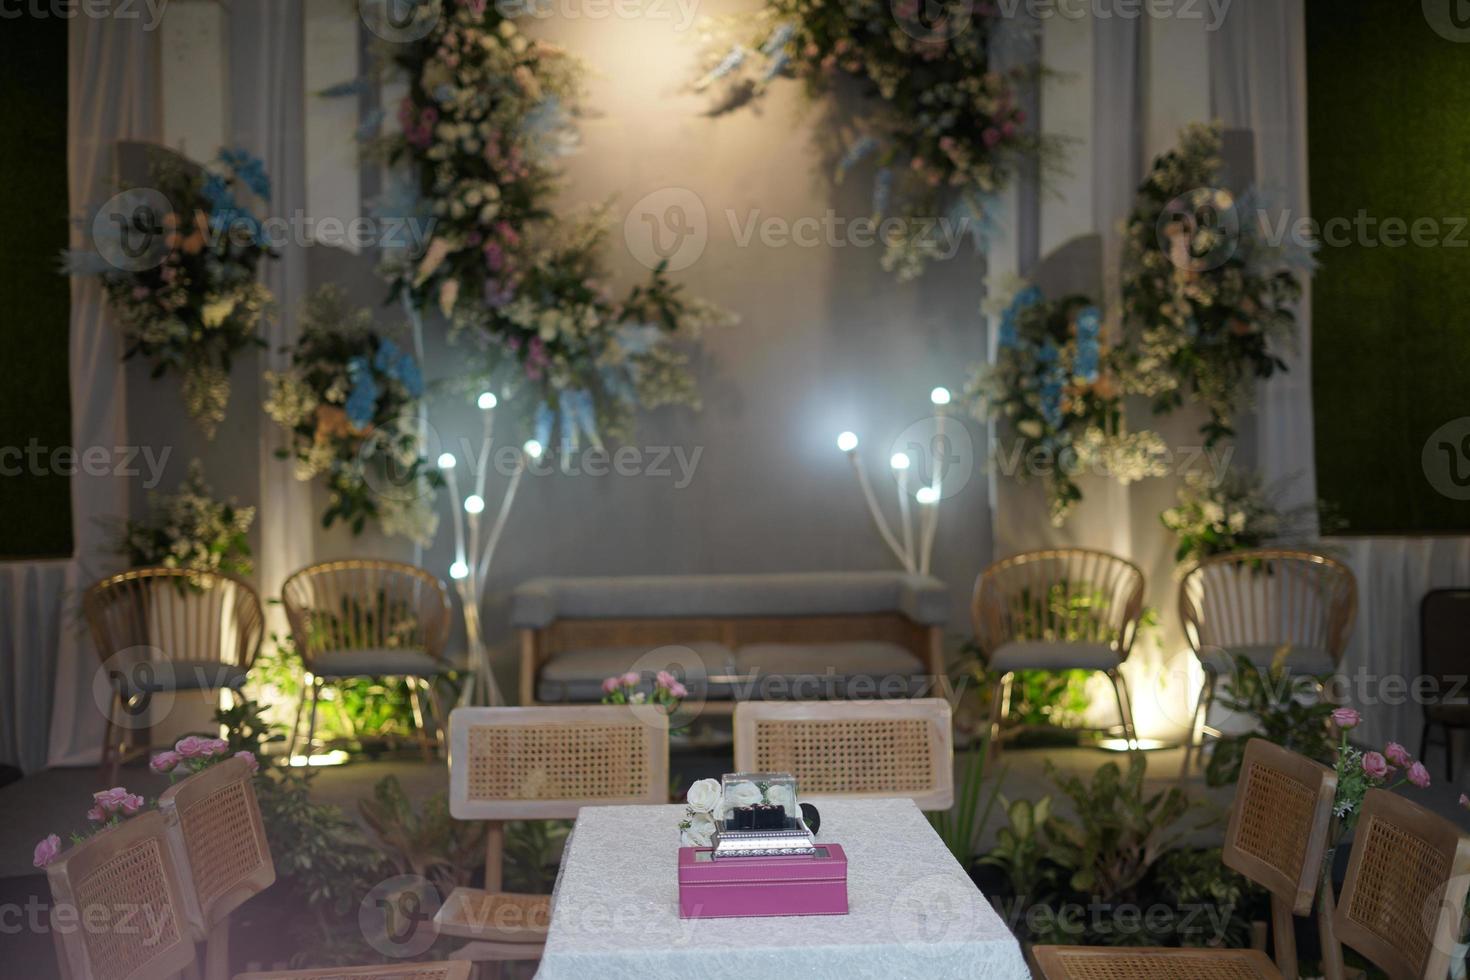 Overeenstemming lichtgewicht raket mooi bruiloft decoratie met bloemen, bladeren en lampen 18770608 Stockfoto